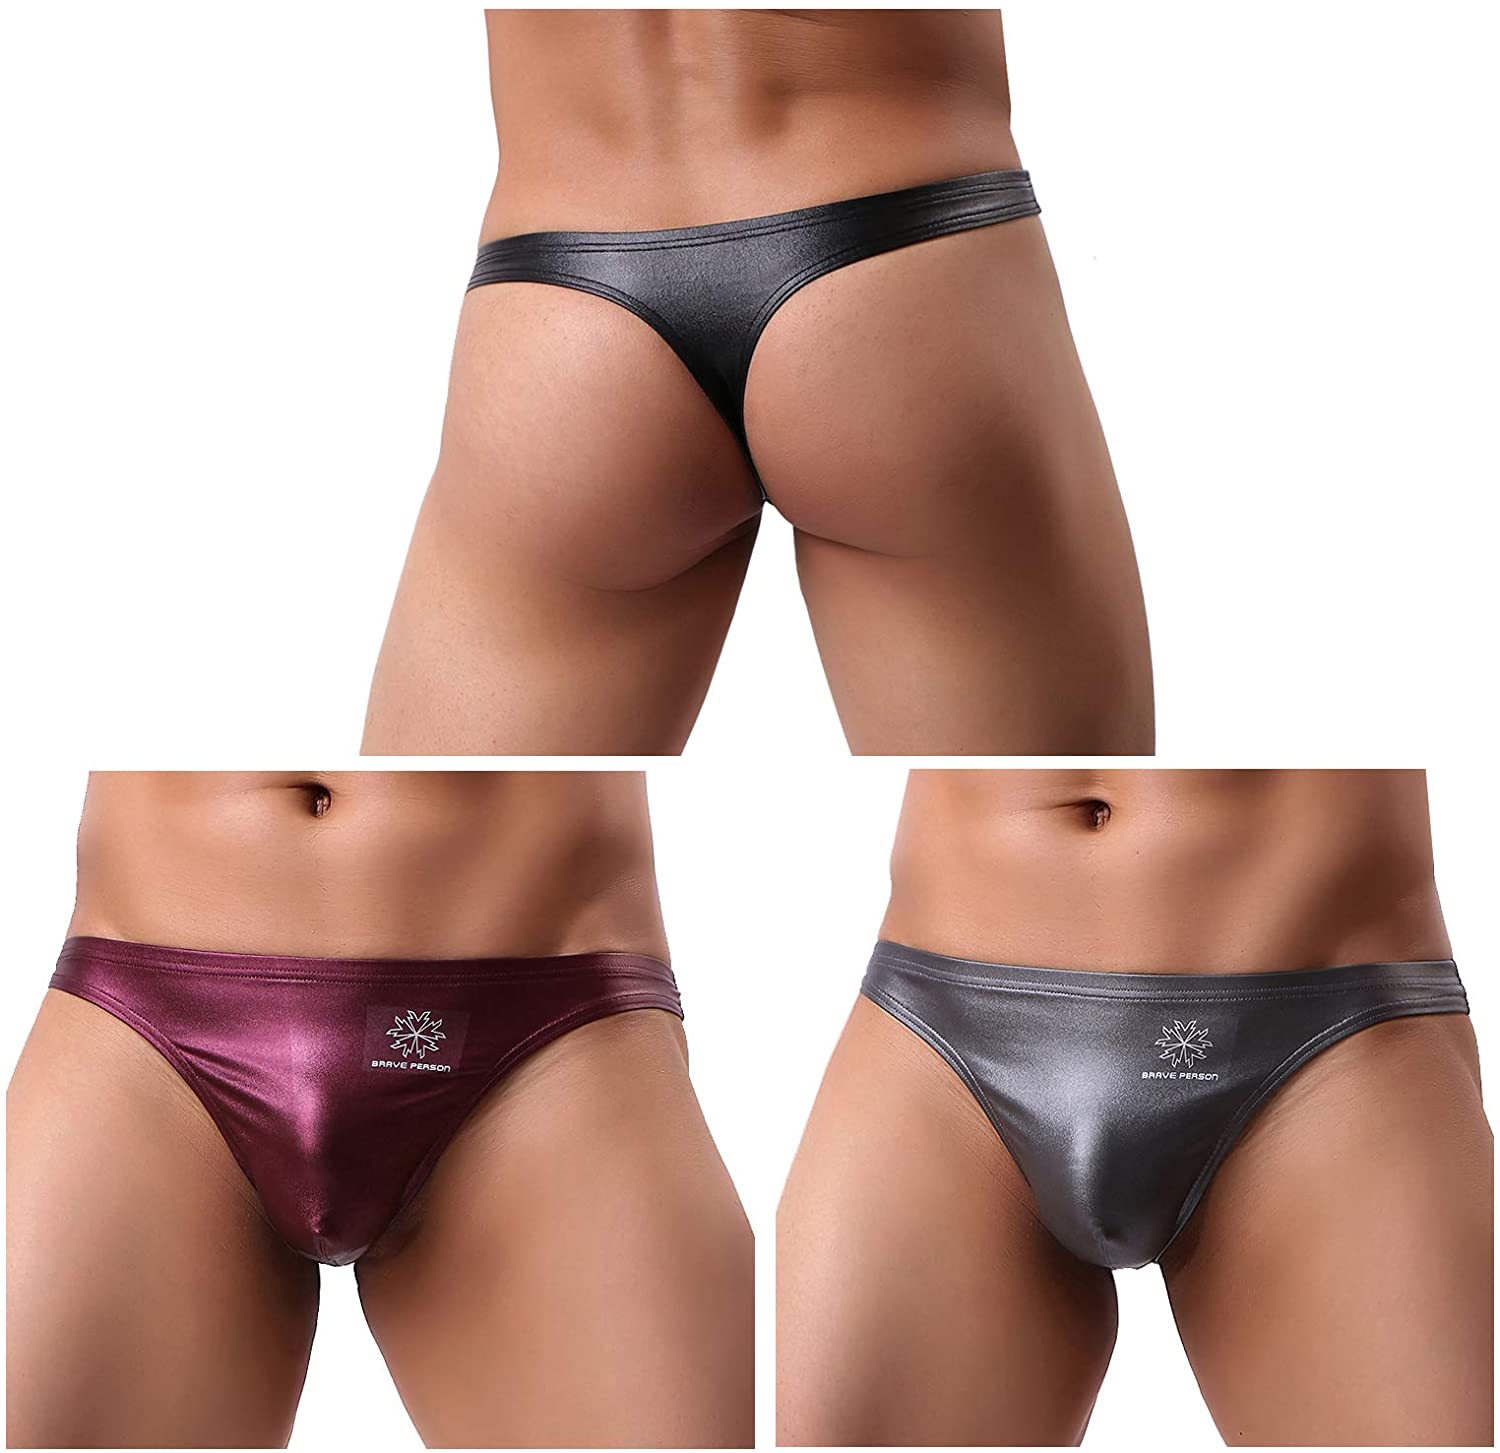 Arjen Kroos Mens Sexy Leather G String Thong Underwear Swimwear Ebay 